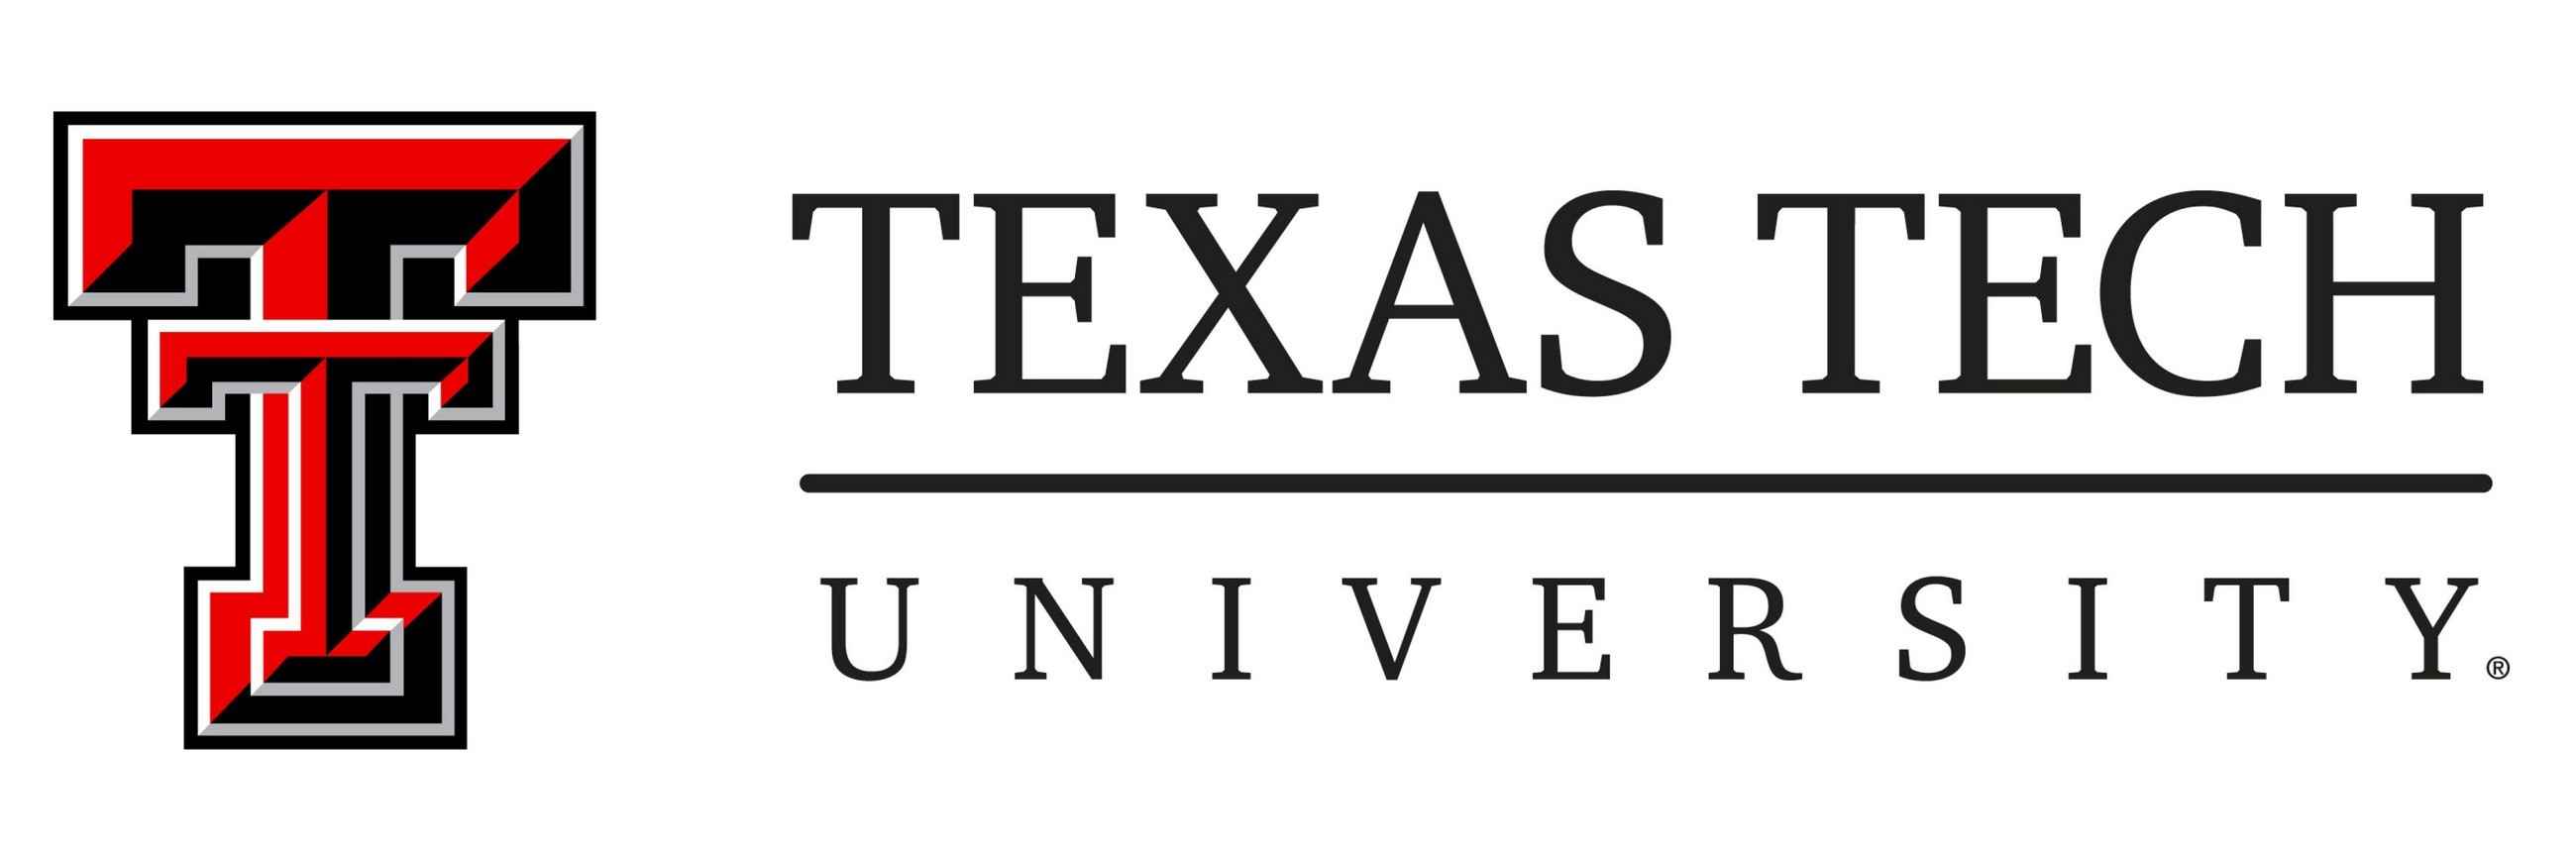 TTU - Texas Tech University Arm&Emblem